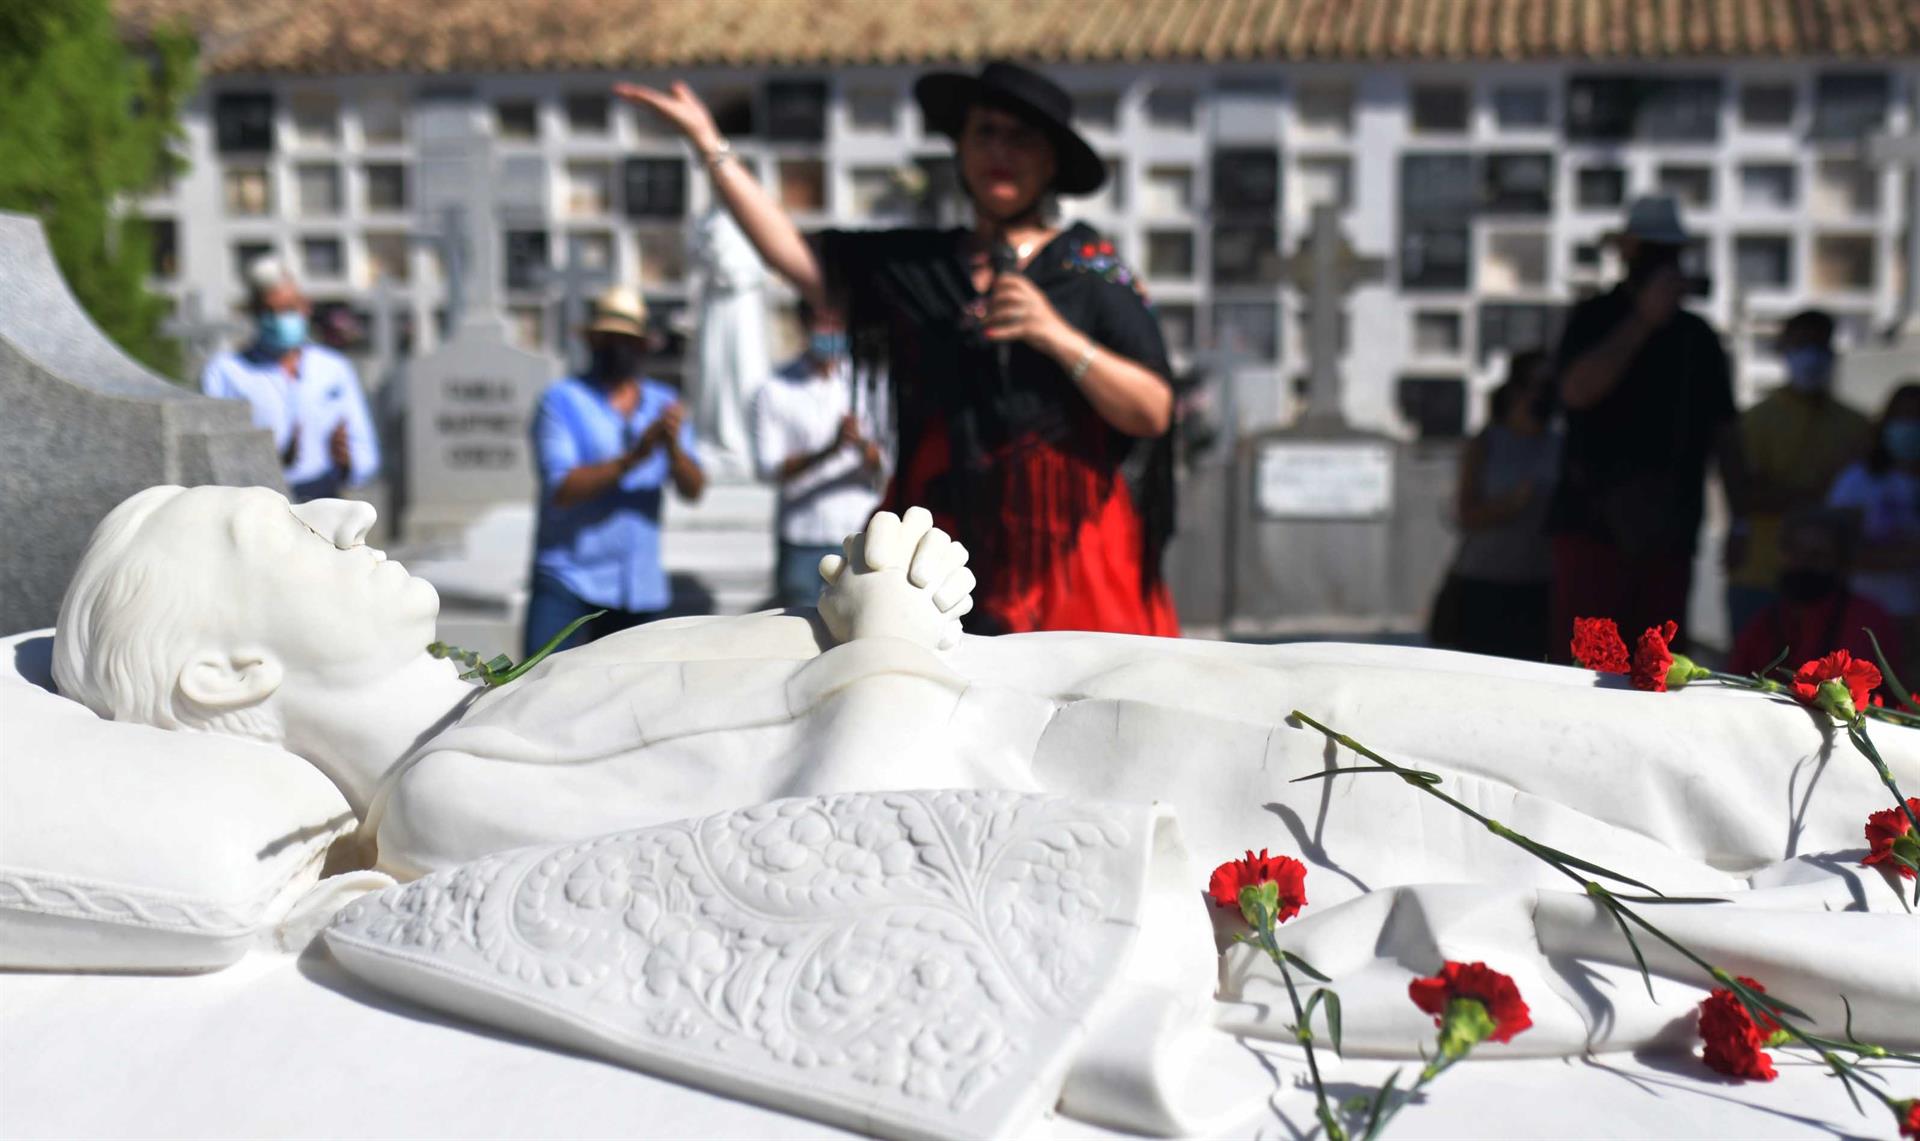 Tumba del diestro Manuel Rodríguez ""Manolete"", en el cementerio de la Salud de Córdoba. EFE/ Rafa Alcaide